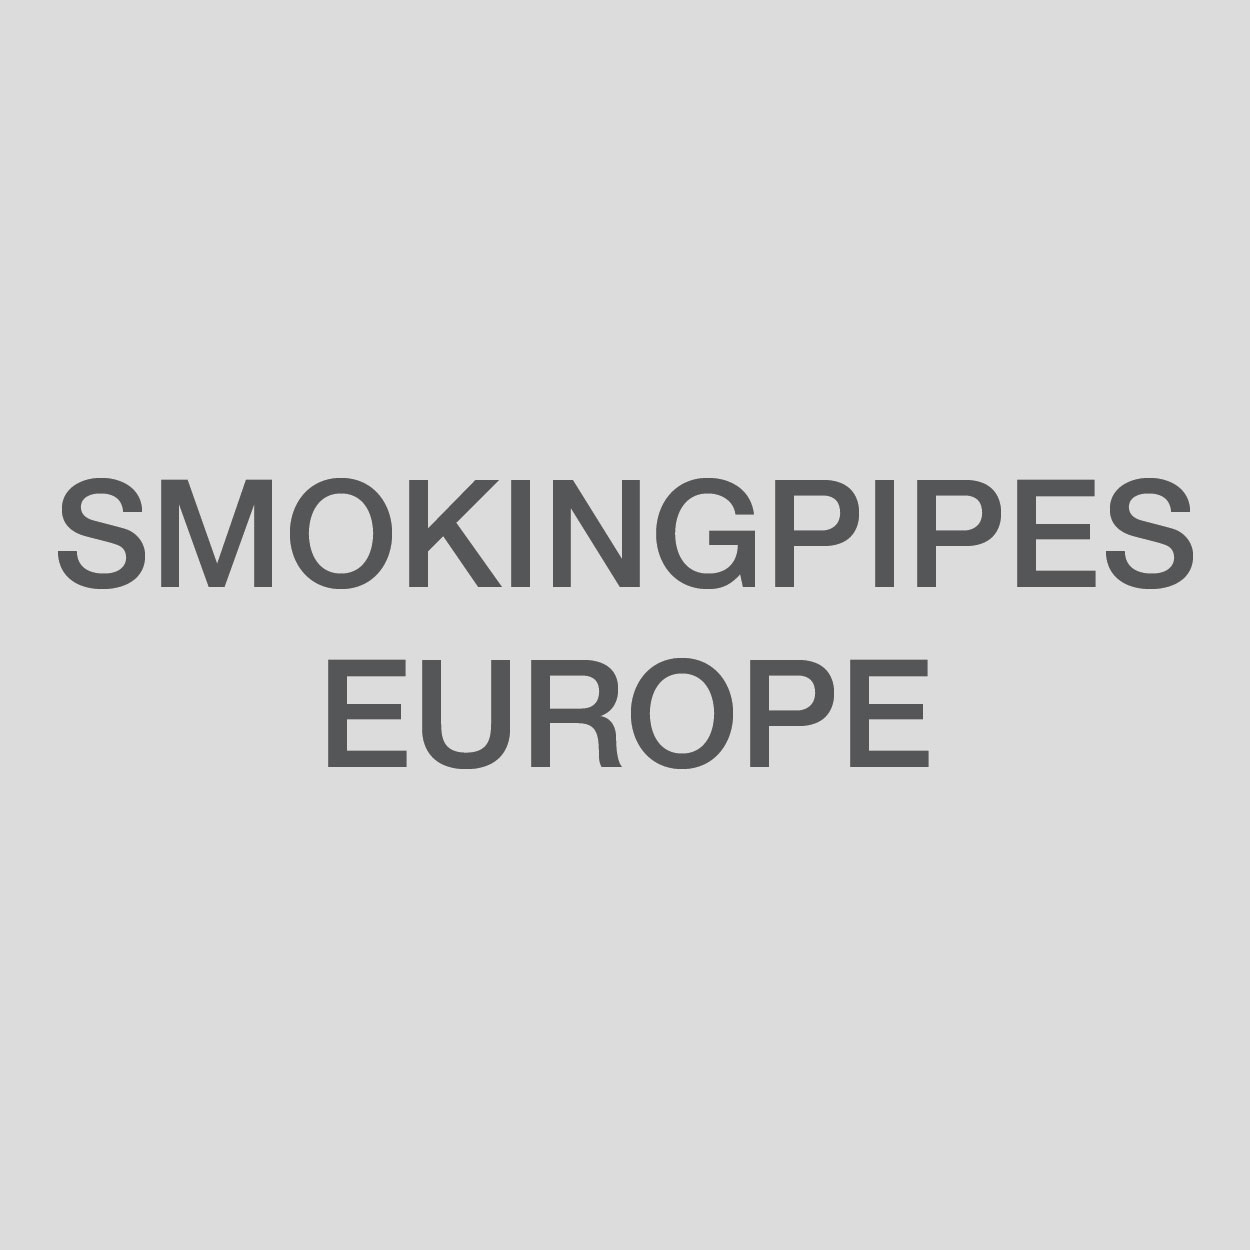 Smokingpipes Europe